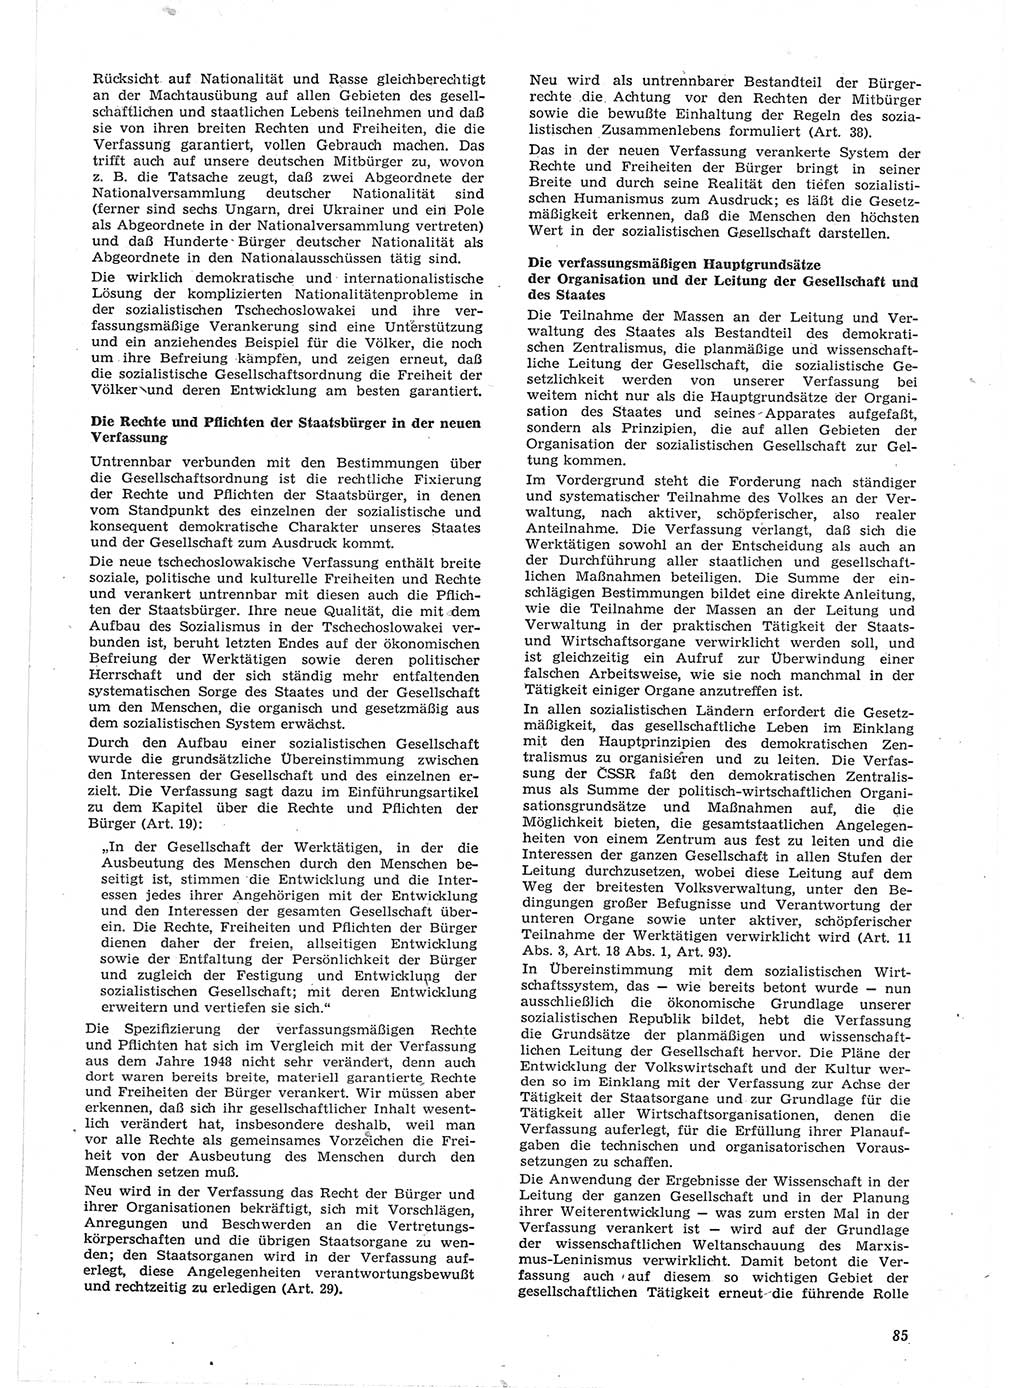 Neue Justiz (NJ), Zeitschrift für Recht und Rechtswissenschaft [Deutsche Demokratische Republik (DDR)], 15. Jahrgang 1961, Seite 85 (NJ DDR 1961, S. 85)